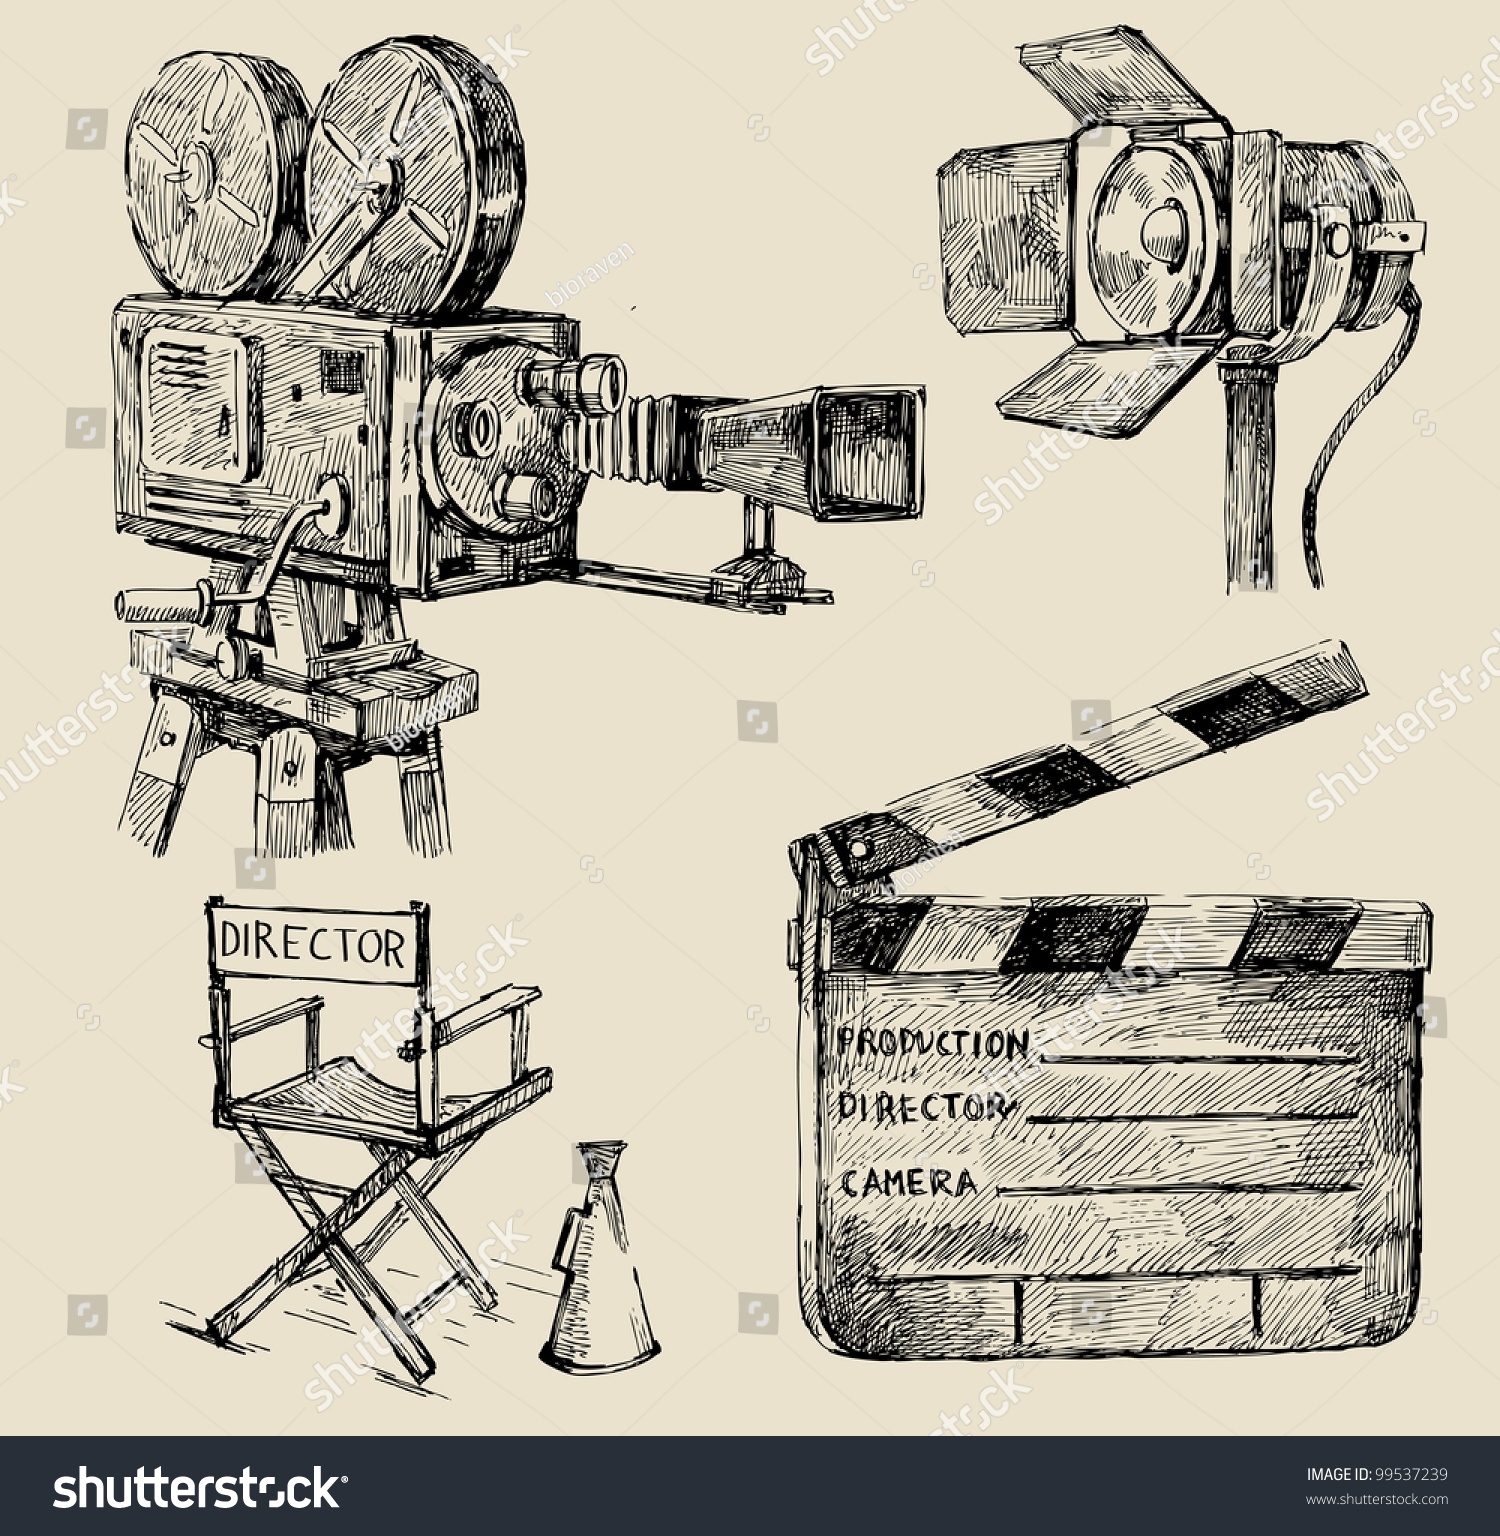 Movie Camera Hand Drawn Stock Vector Illustration 99537239 : Shutterstock